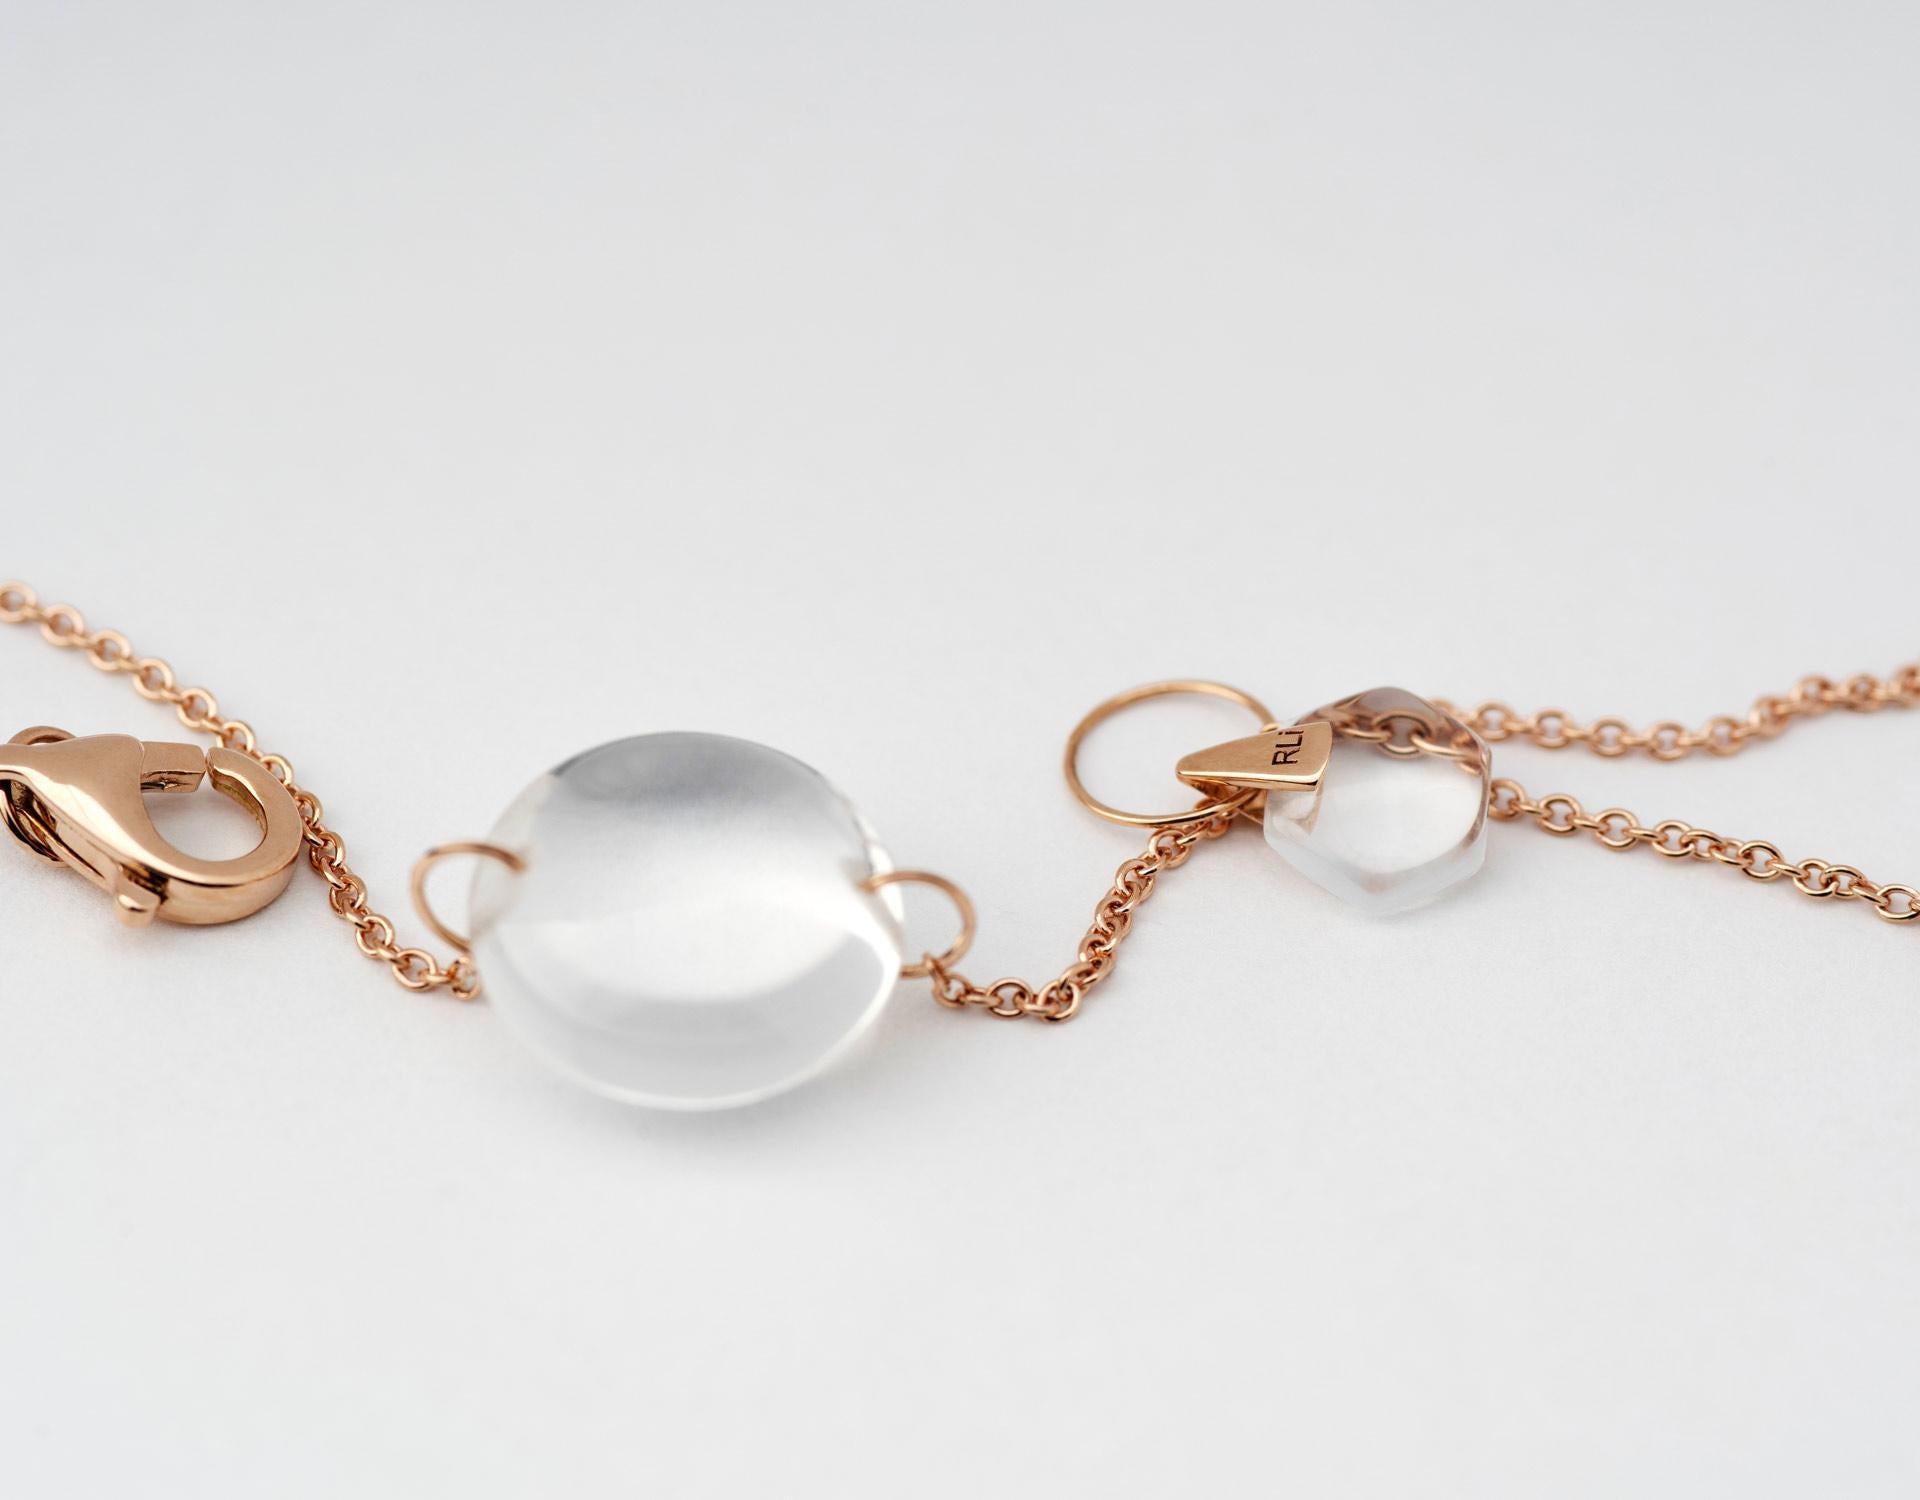 Rebecca Li entwirft Achtsamkeit. 

Dieses minimalistische, moderne Armband ist aus ihrer Crystal Links Collection. Inspiriert von der heiligen Geometrie, soll sie uns an unsere innere Kraft erinnern. 
Es geschehen Wunder.

Natürlicher Bergkristall